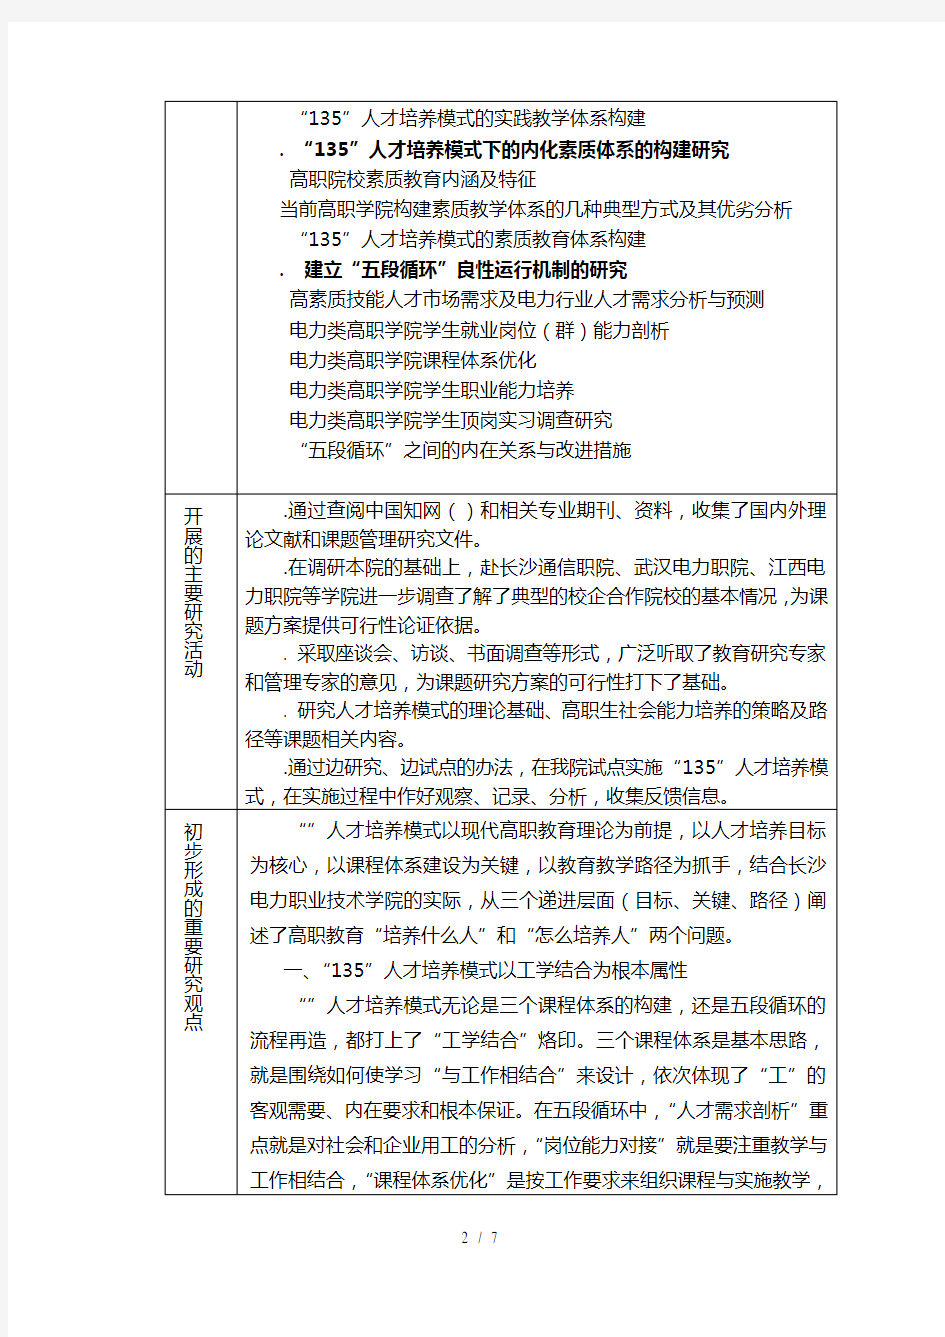 (完整版)湖南省教育科学规划课题中期检查报告表